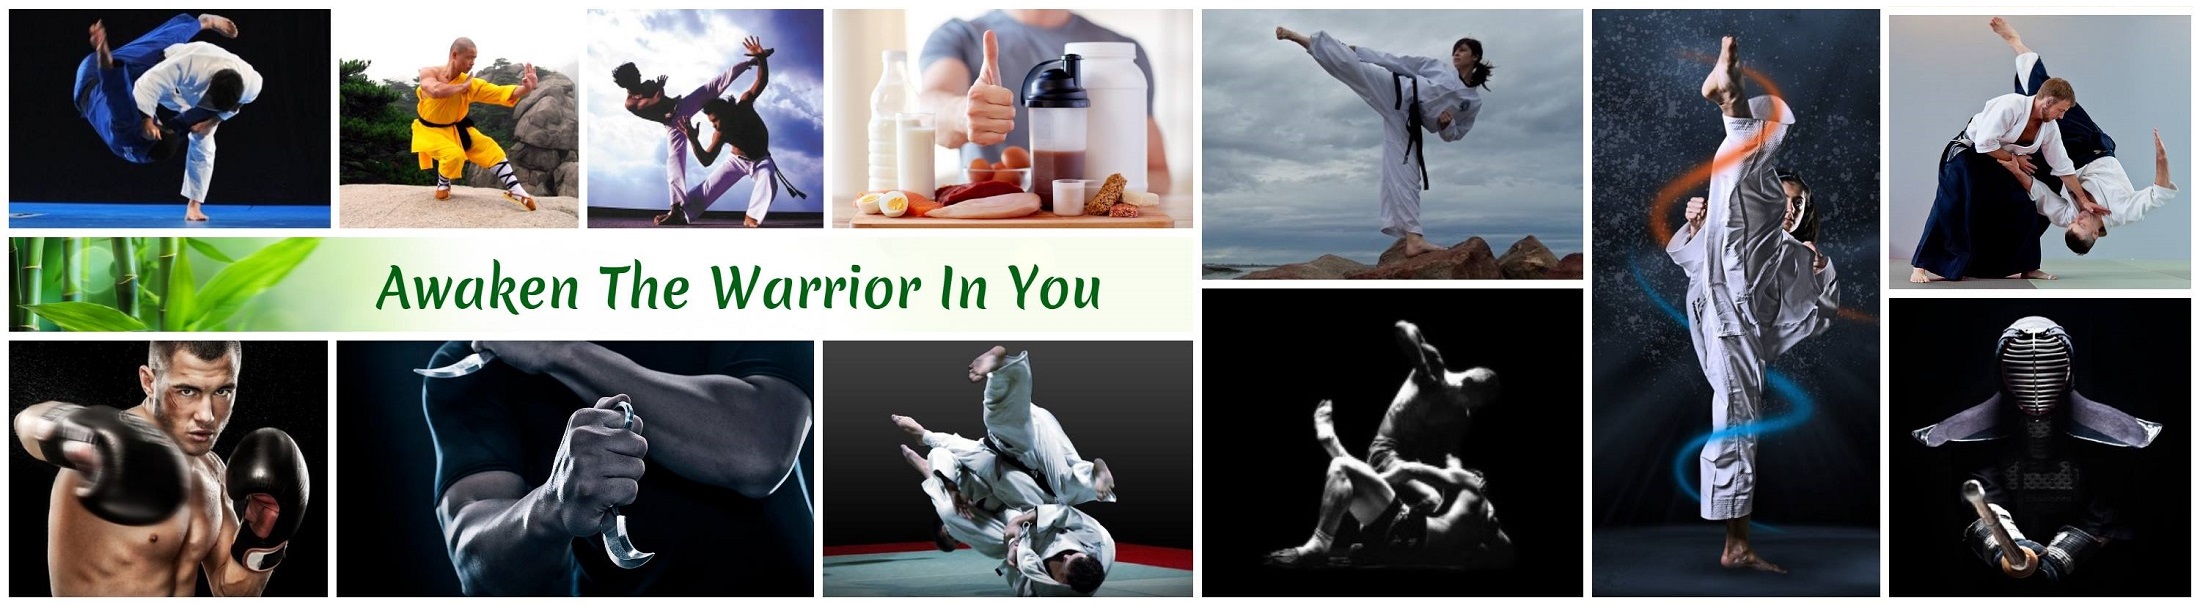 martial arts, combat sports, and yoga social network community